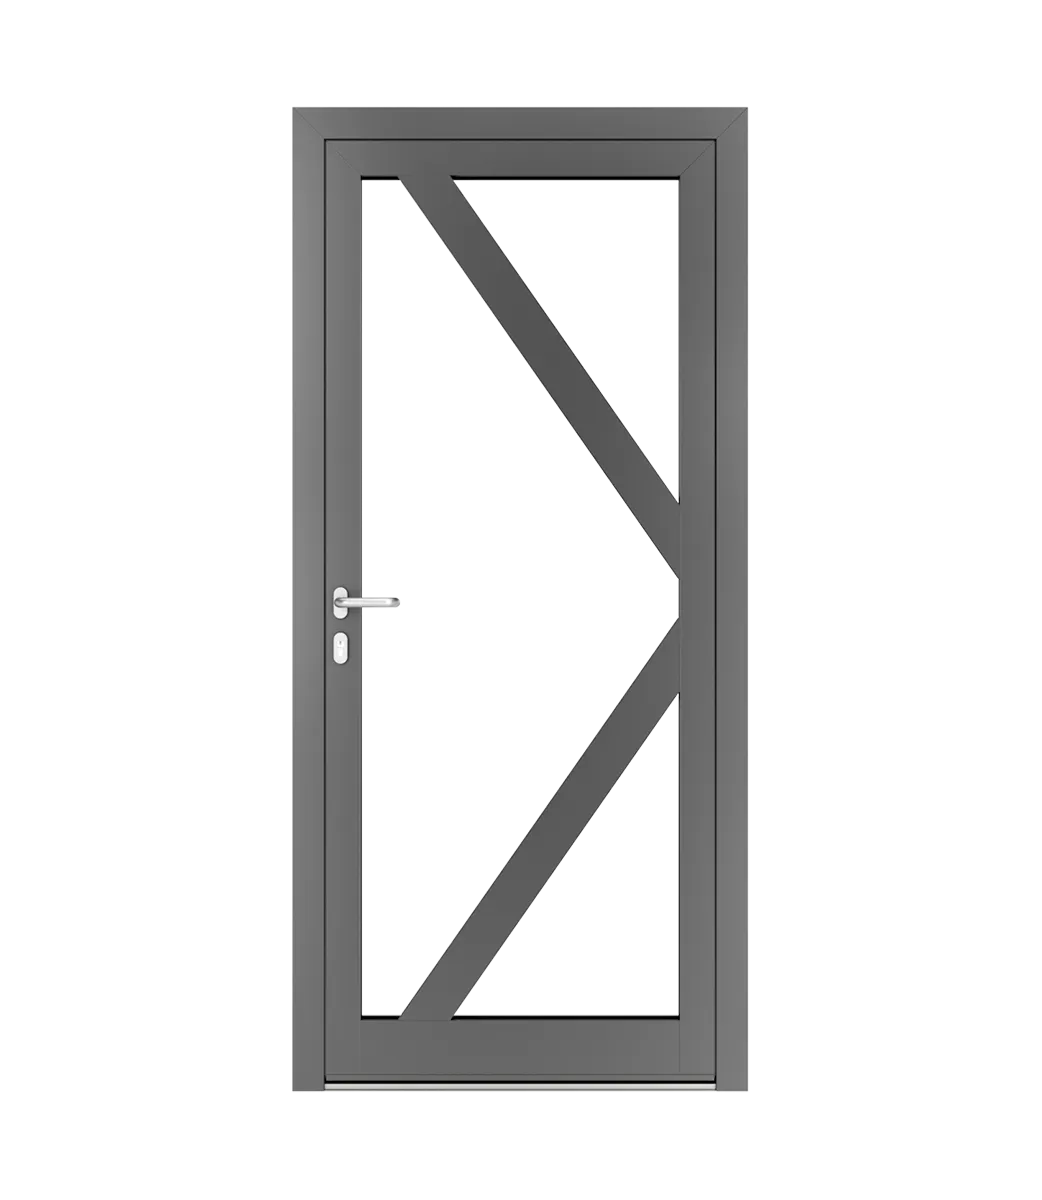 AP Fensterbau, Schnürungen in Aluminiumtüren - Beispiel Nr. 7